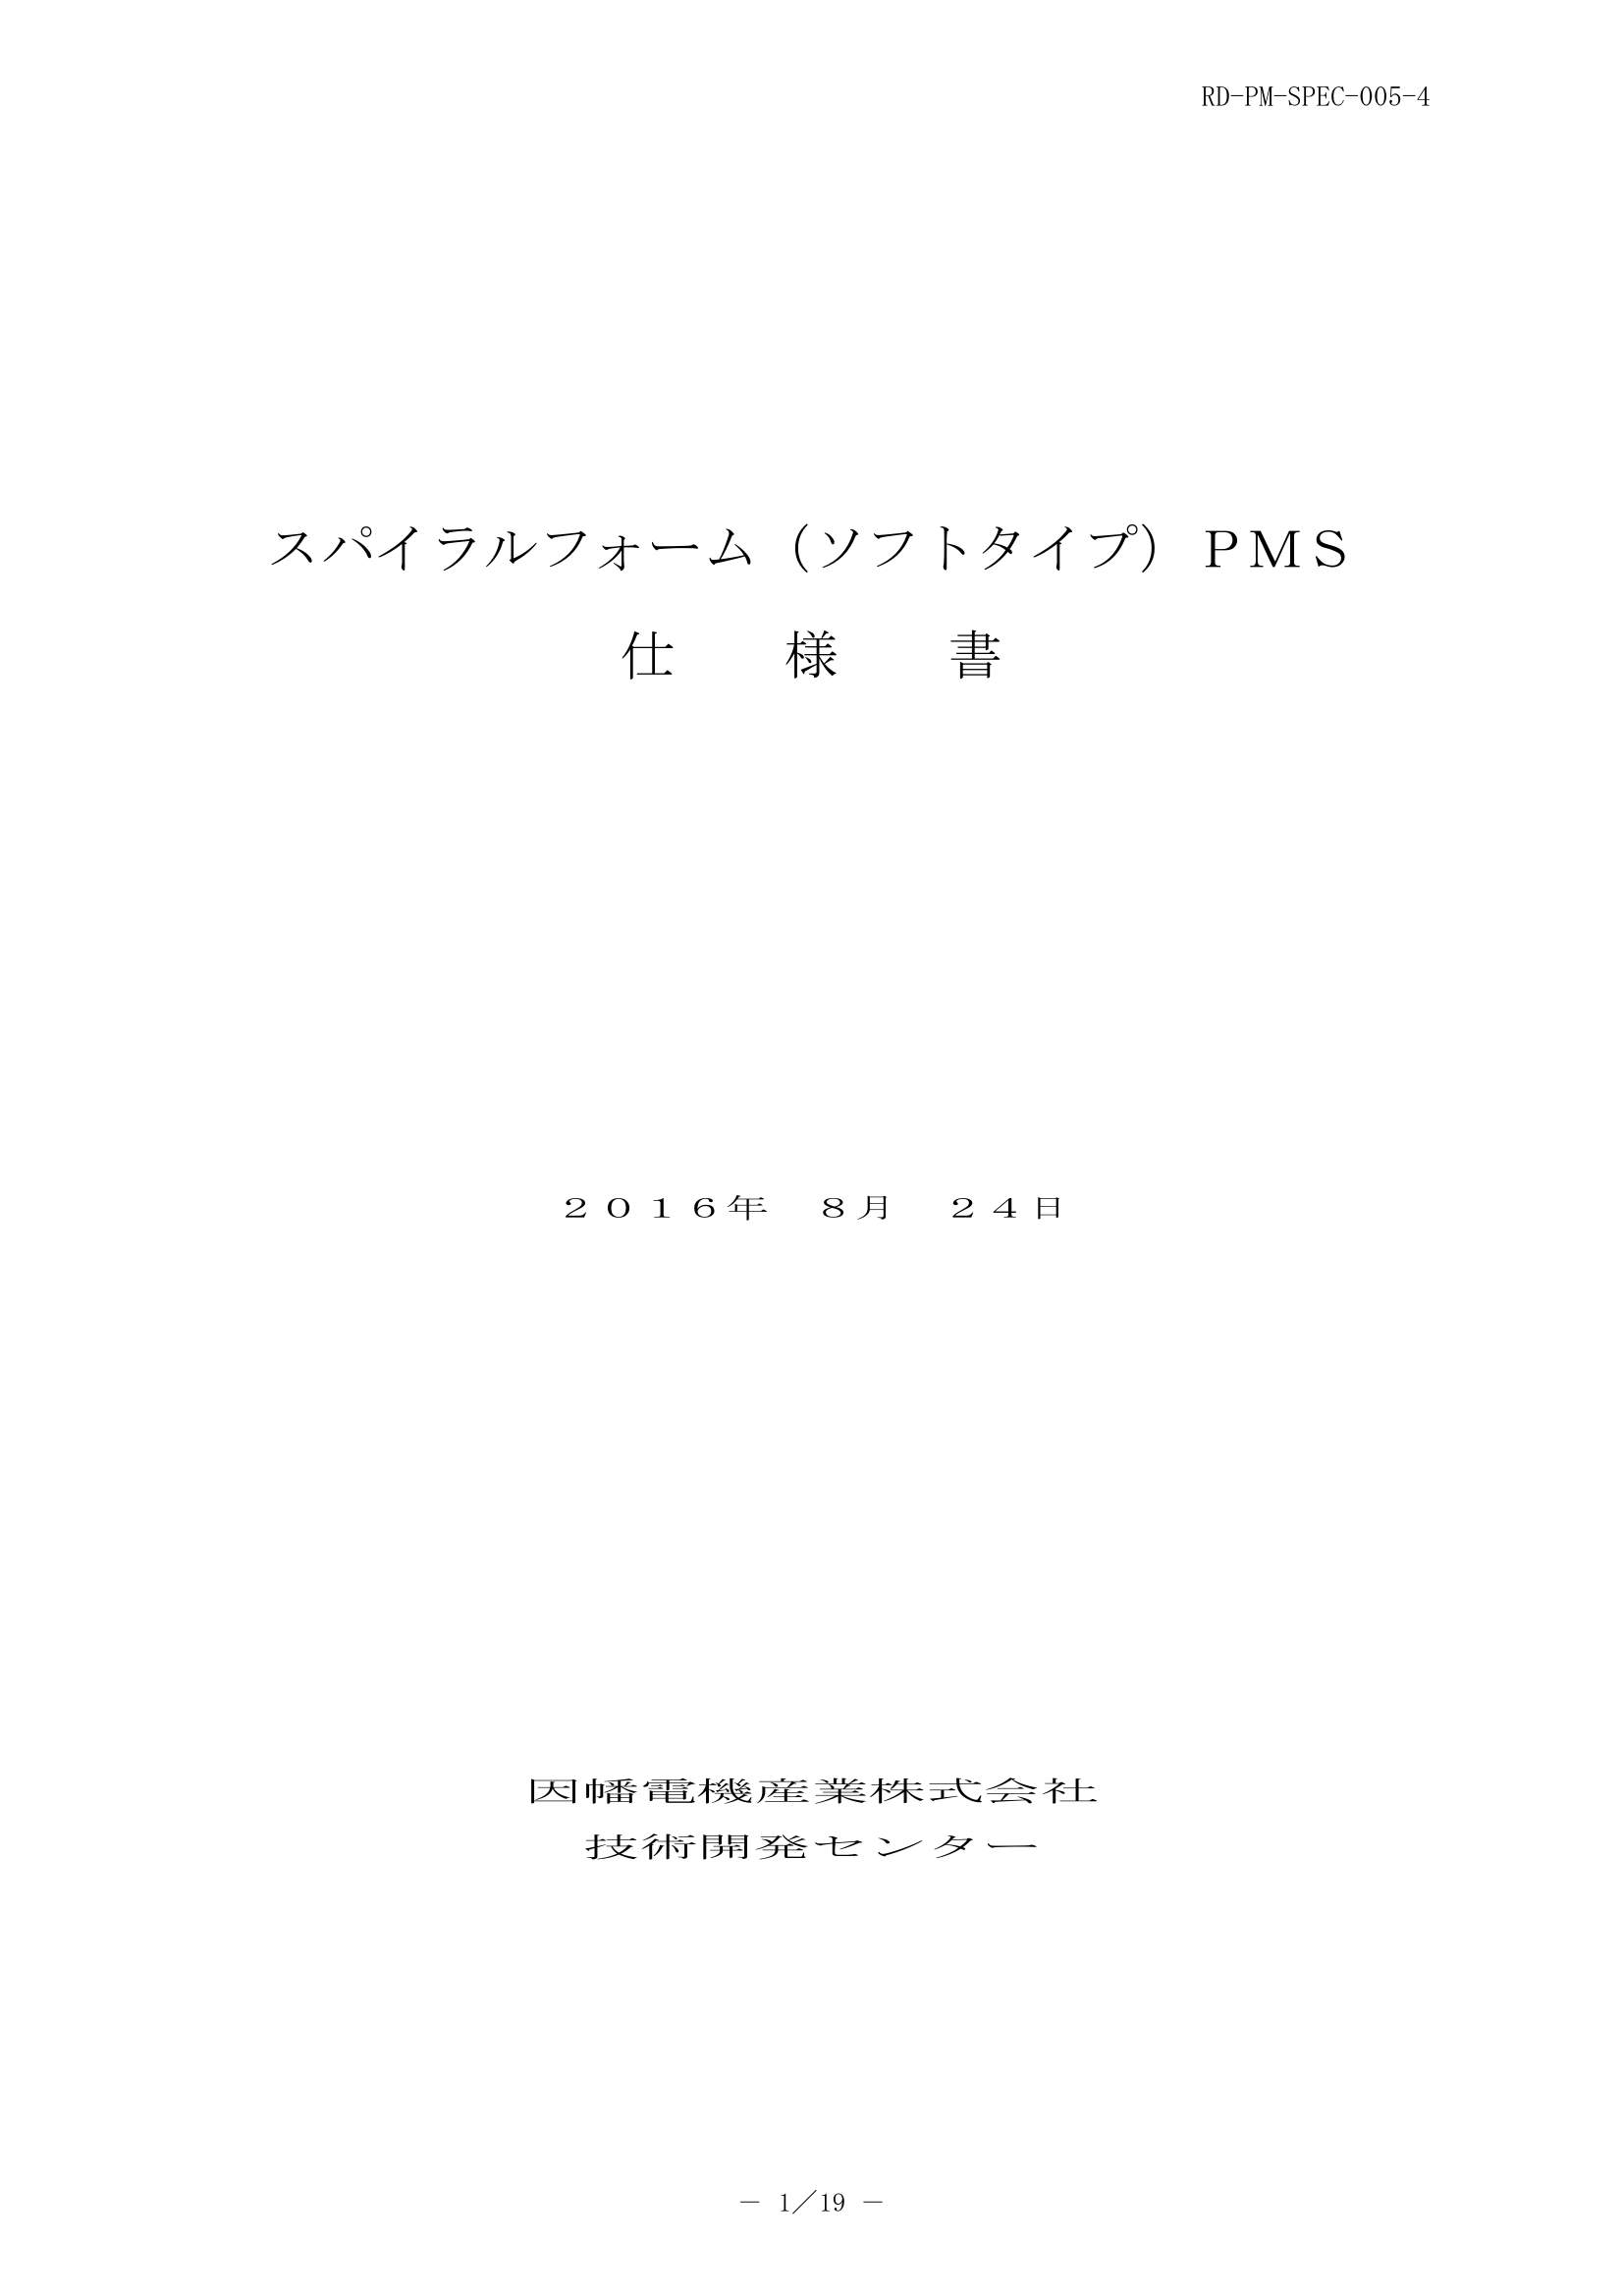 PMS_仕様書_20160824-0W.pdf